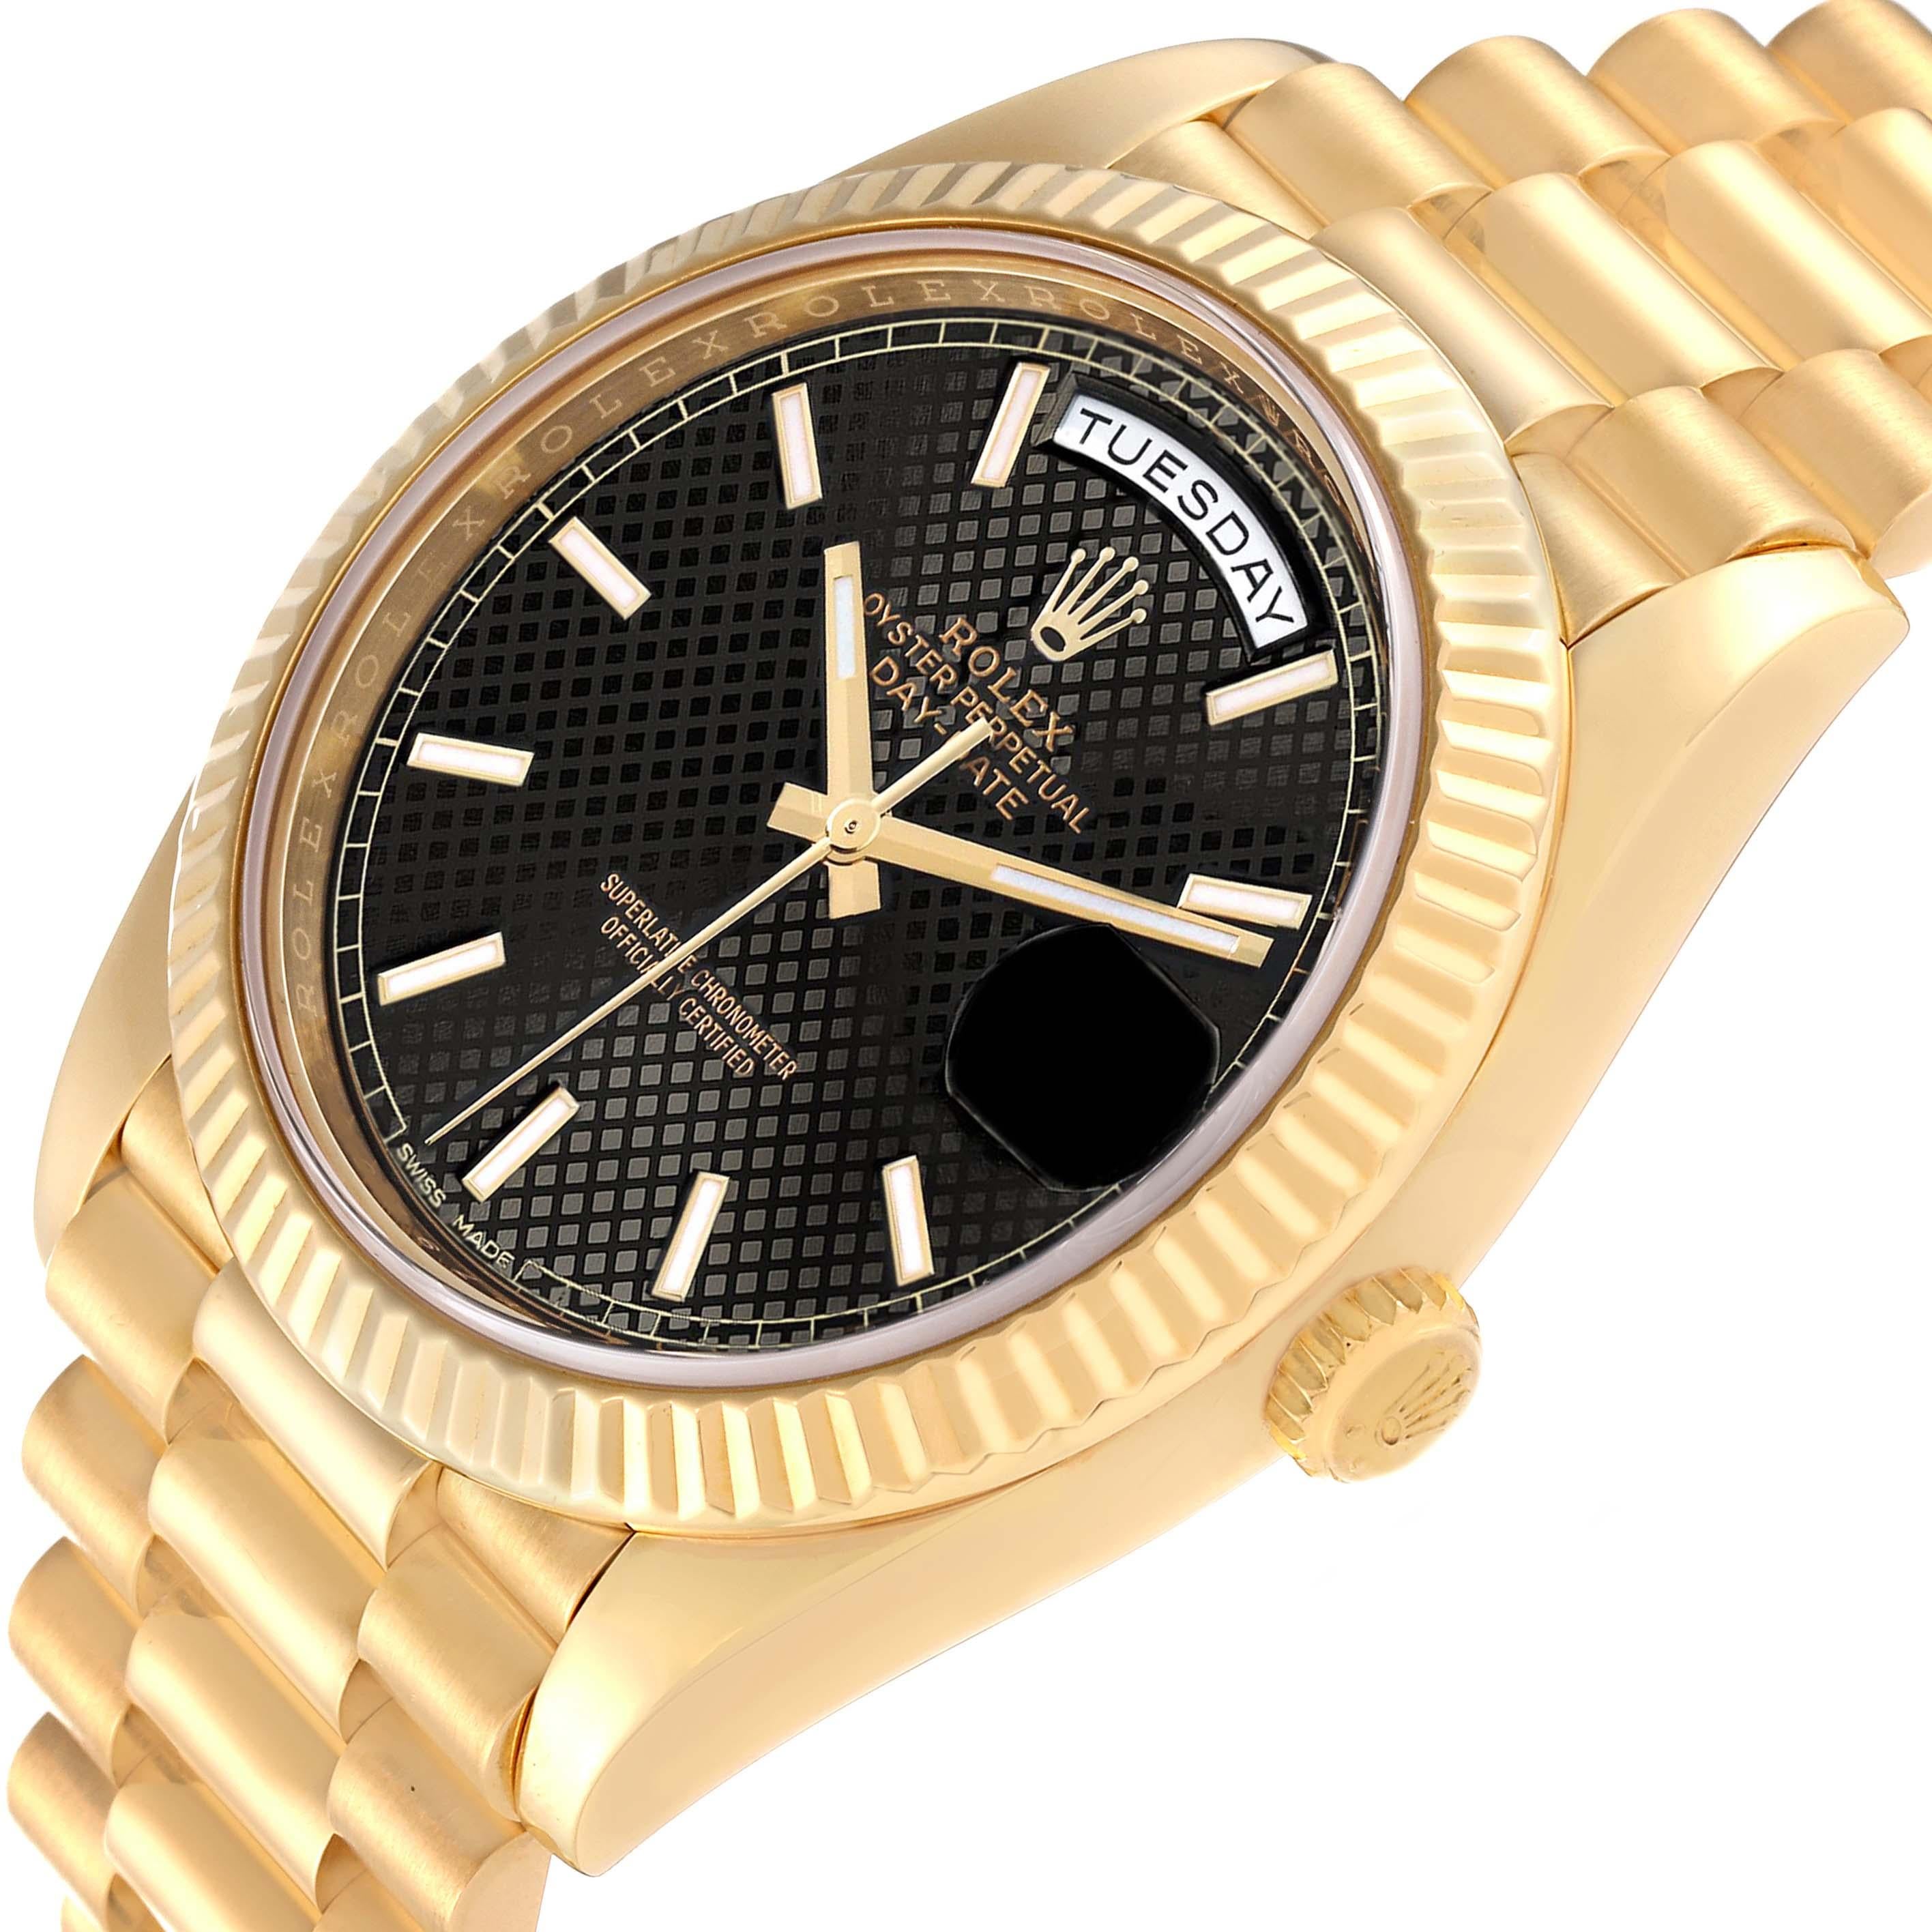 Rolex President Day-Date 40 Black Dial Yellow Gold Mens Watch 228238. Mouvement automatique à remontage automatique, officiellement certifié chronomètre. Double fonction de réglage rapide. Boîtier en or jaune 18 carats d'un diamètre de 40,0 mm. 